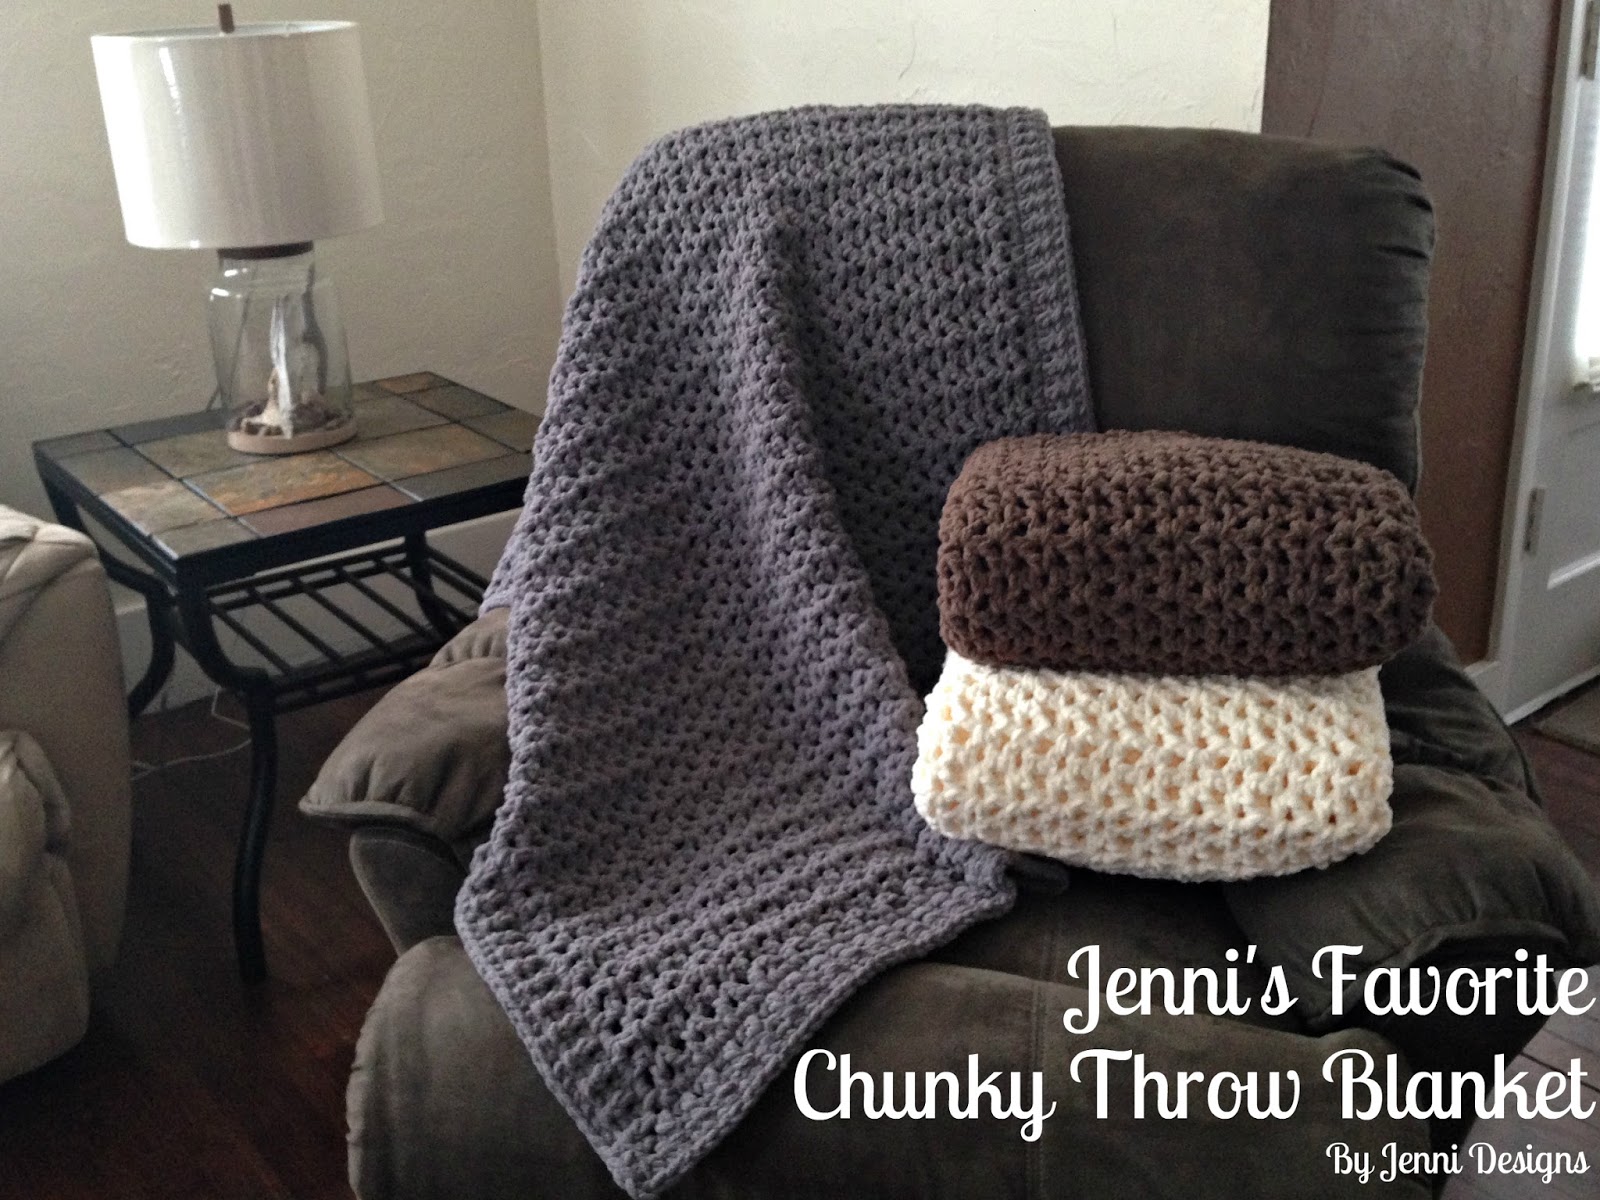 By Jenni Designs: Free Crochet Pattern: Jenni's Favorite Chunky